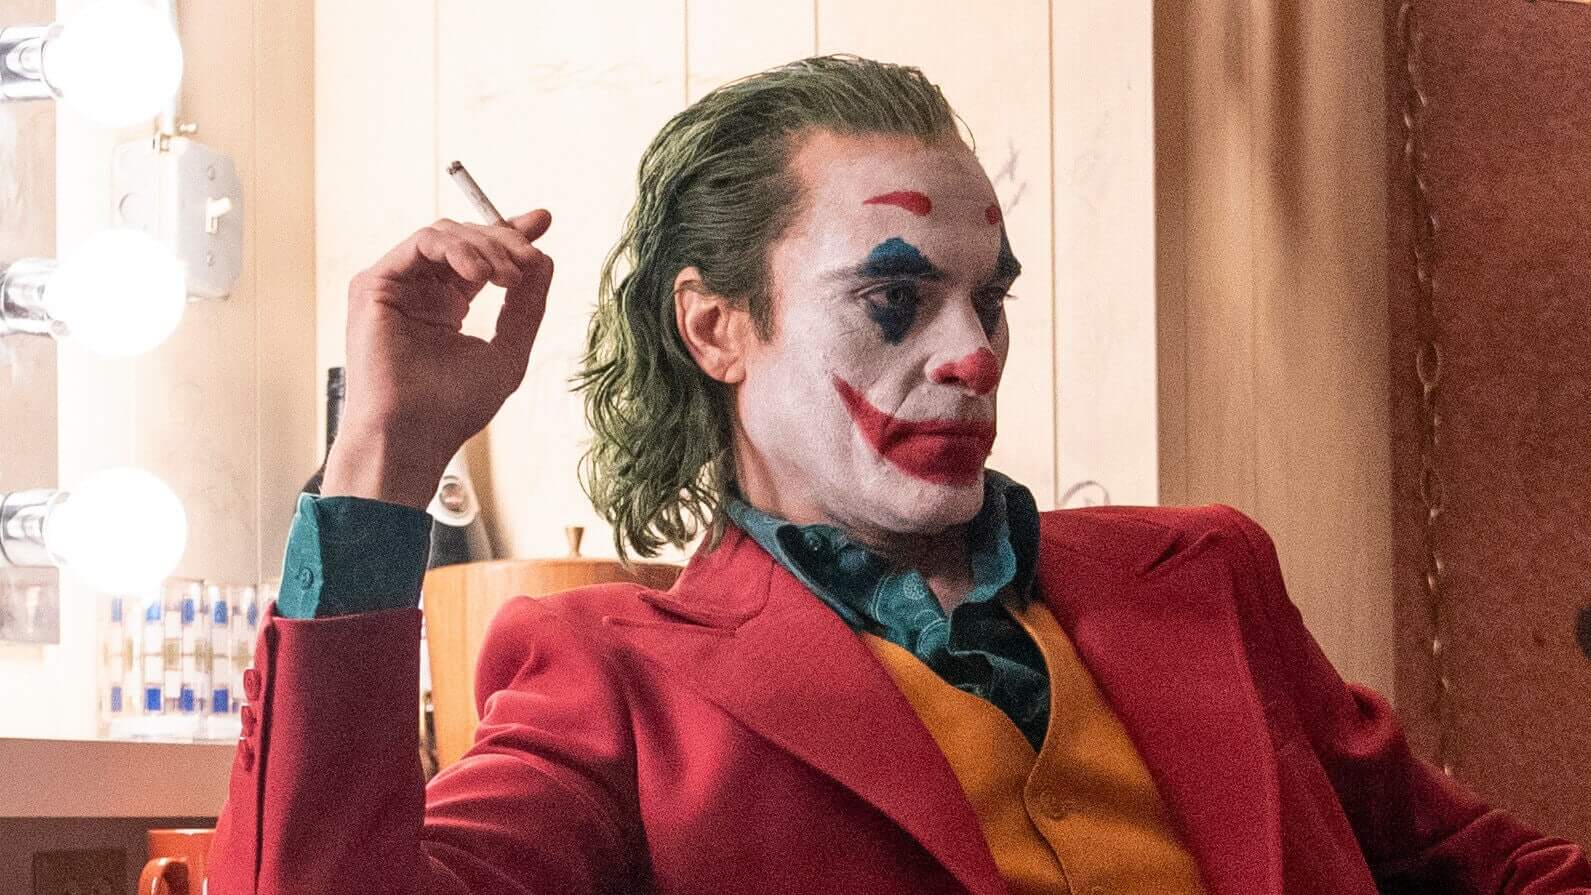 A Warner Bros. jelentős változásokat eszközöl a DC filmek részlegénél, és a Joker rendezőjét felkérték, hogy felügyelje a DCEU-t a továbbiakban